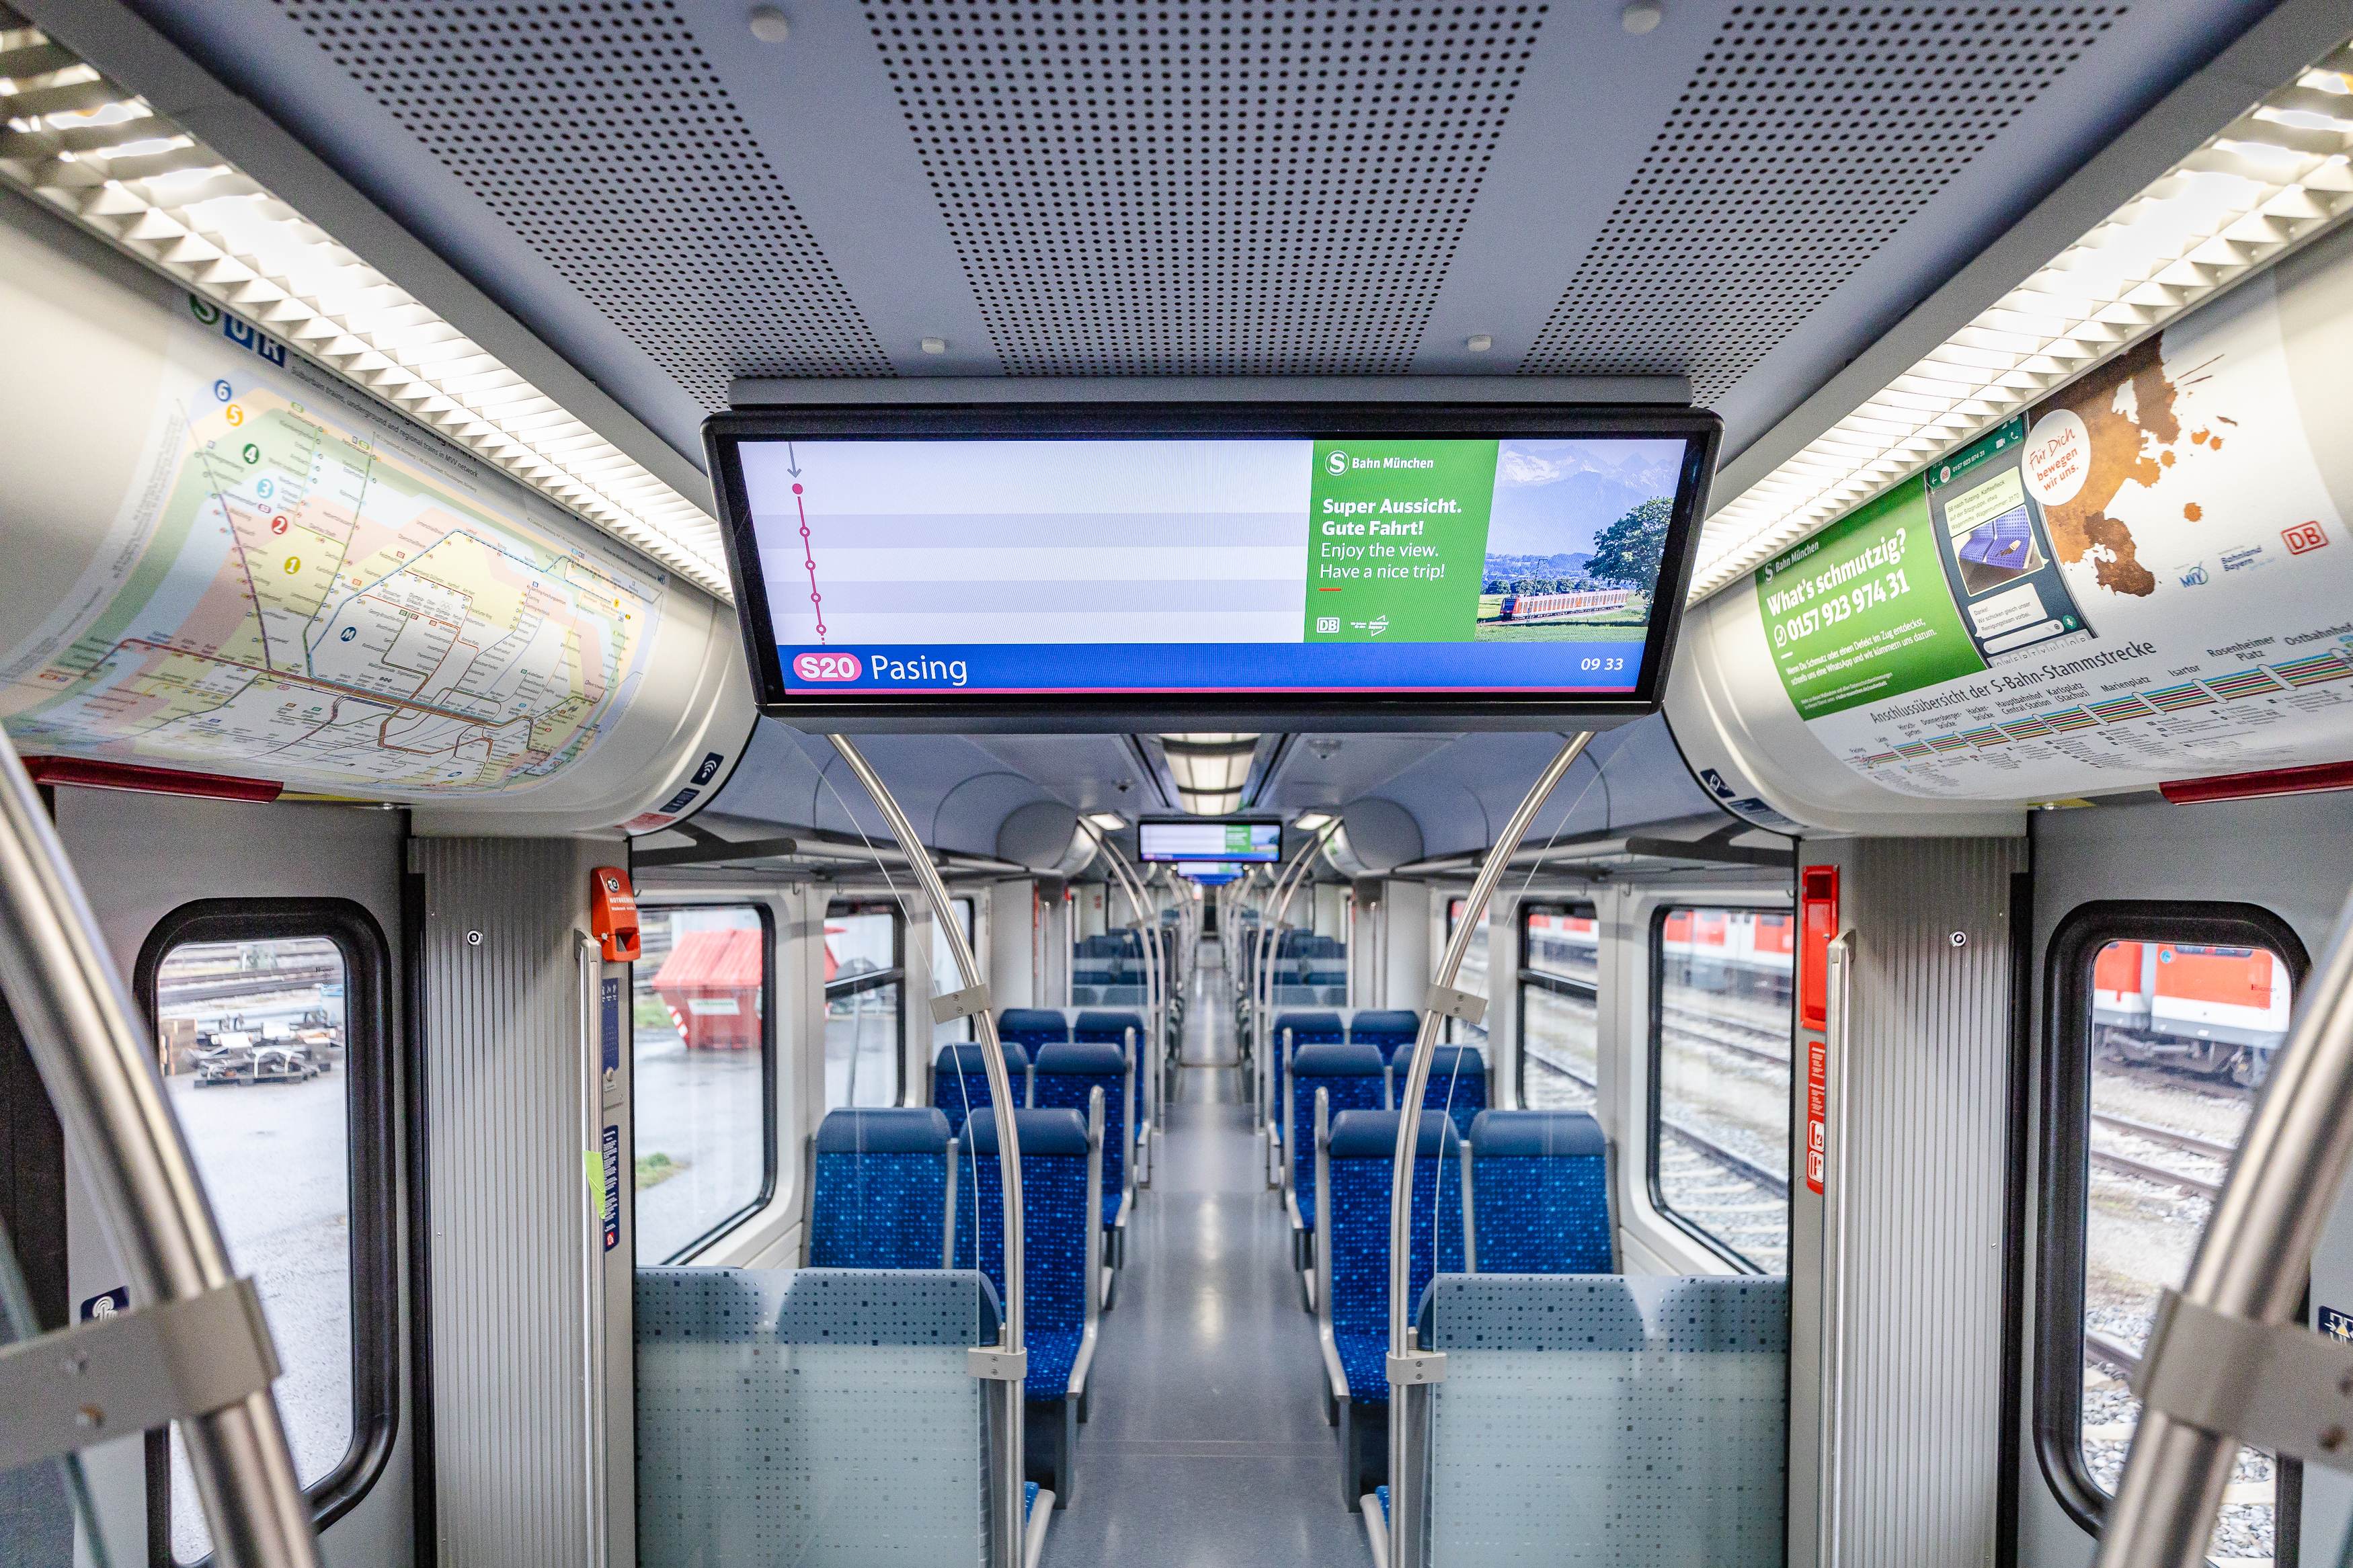 Zuwachs für Münchner S-Bahn-Flotte: Erste modernisierte Züge aus Hannover  im Einsatz